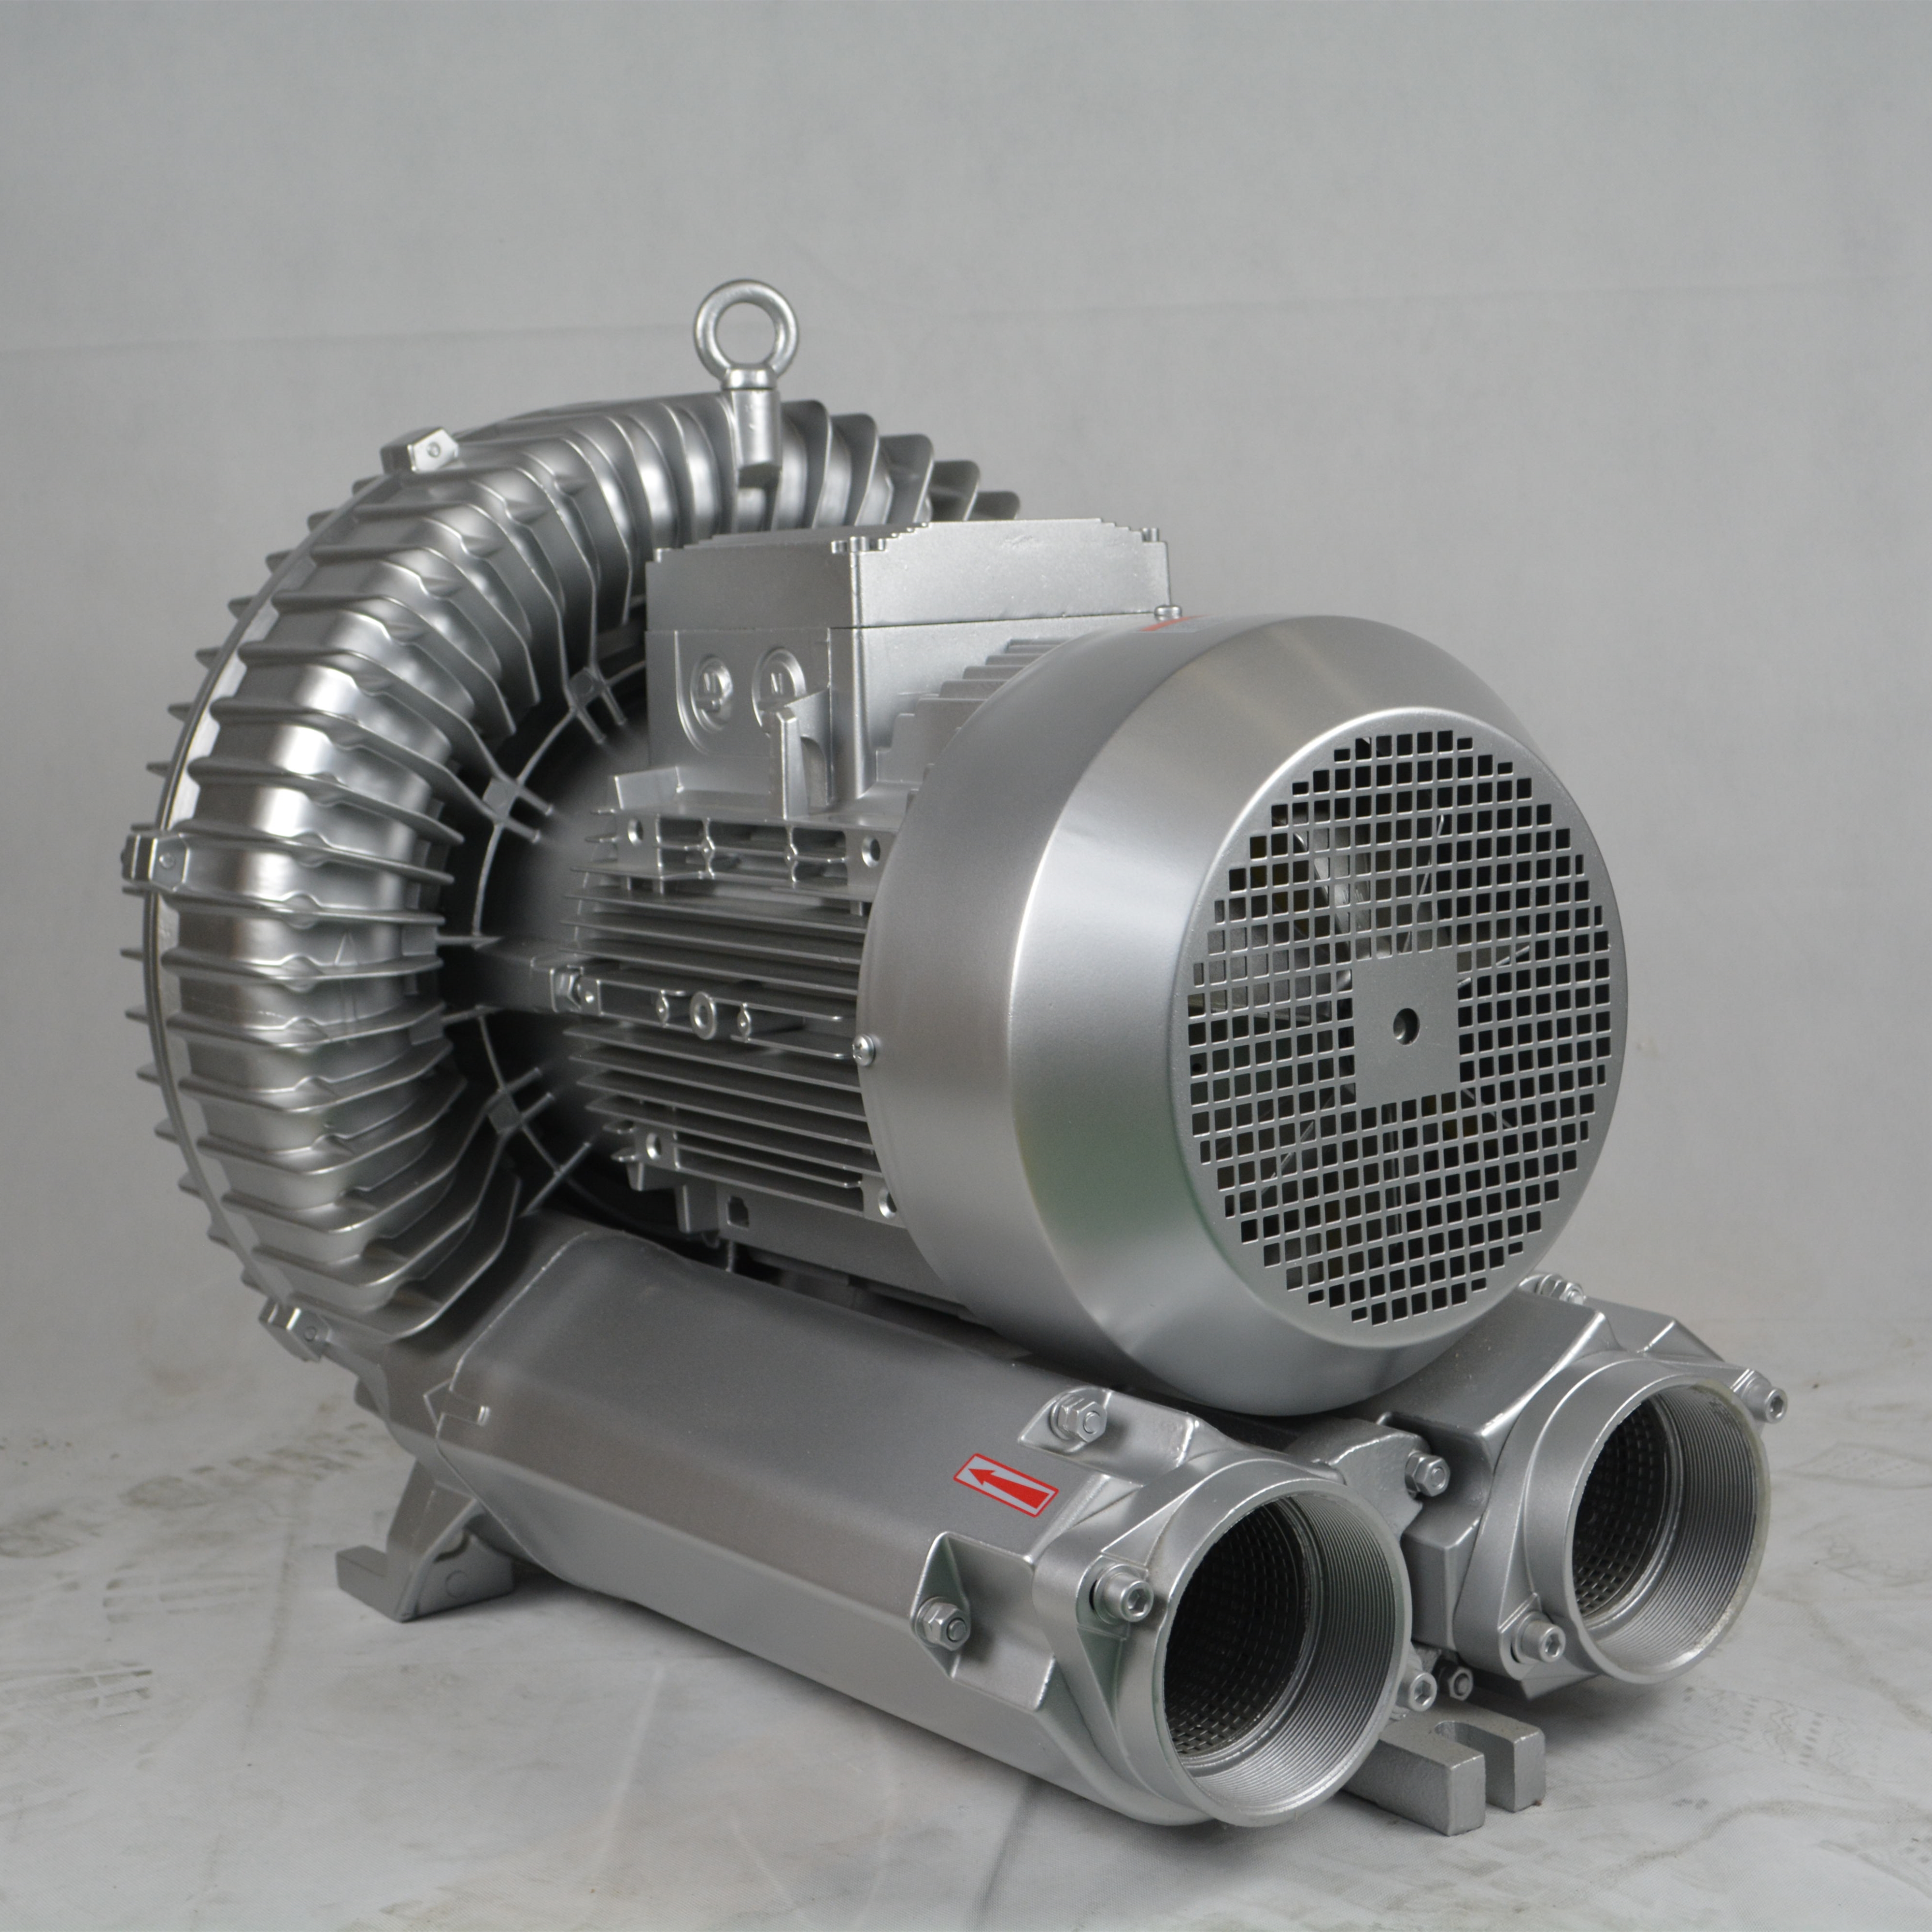 吸尘器专用强力吸高压风机 工业吸尘风机,工业吸尘器,工业集尘机,柜式